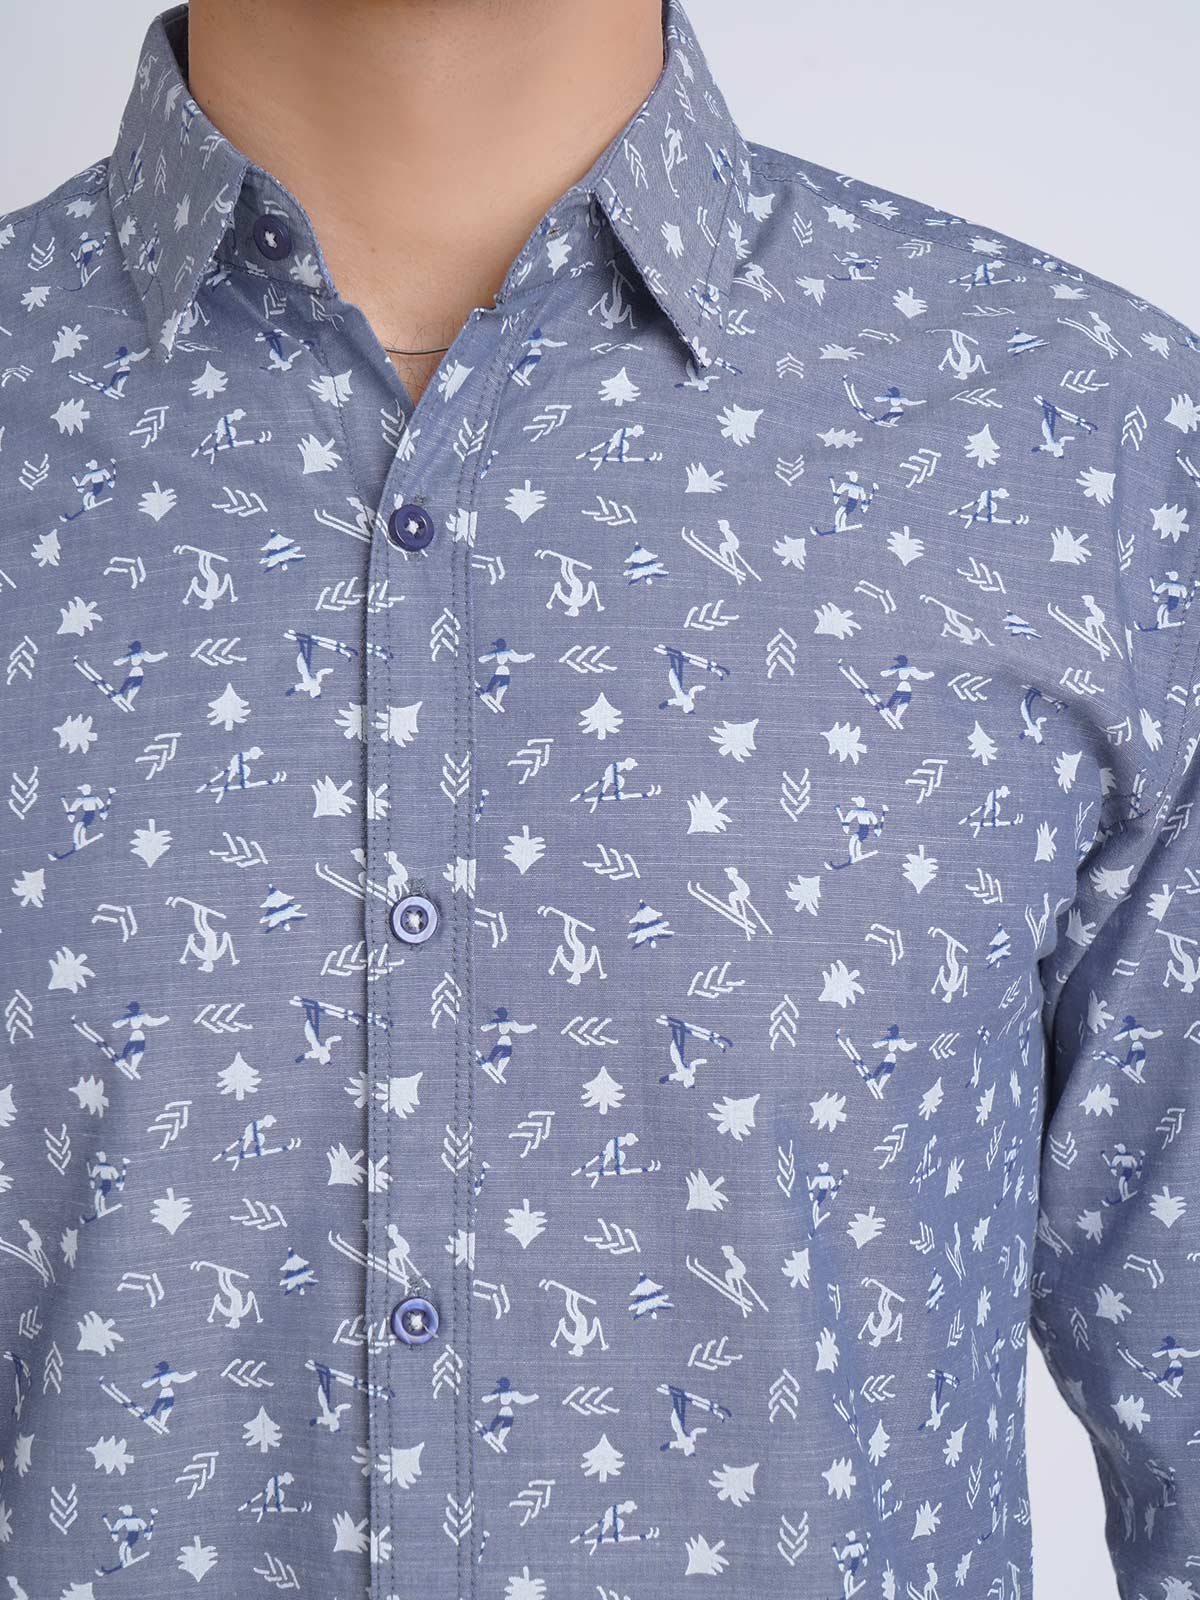 Blue Self Designer Printed Casual Shirt (CSP-168)